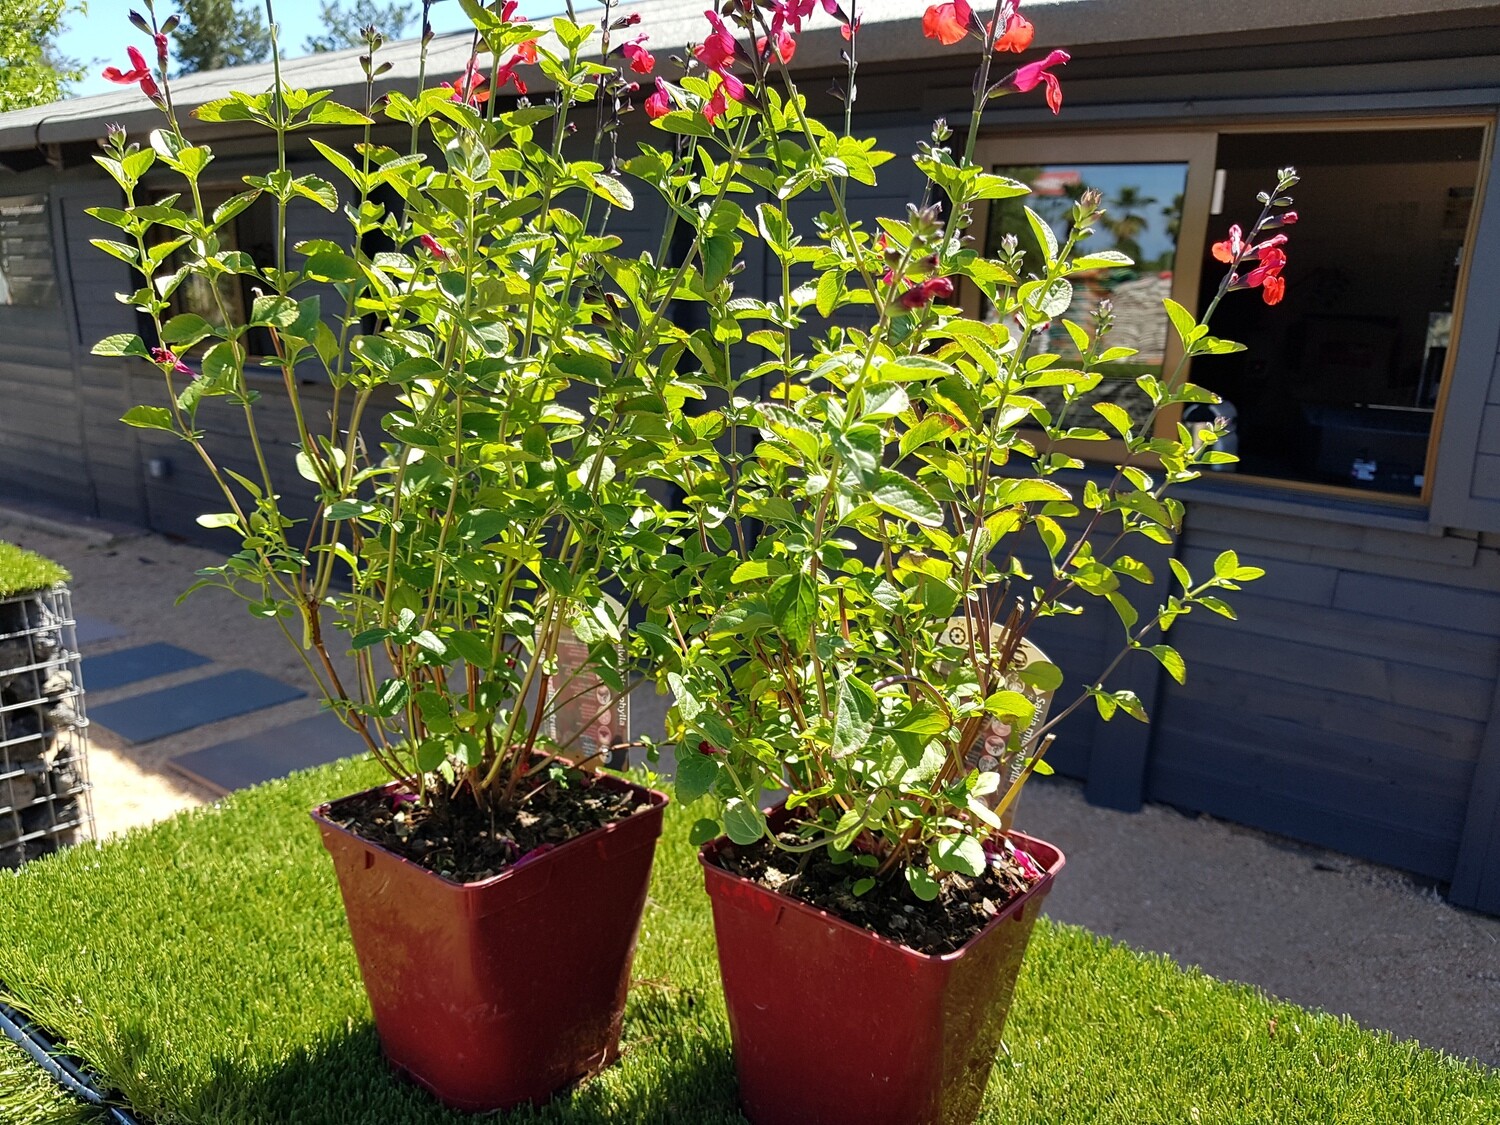 "AmaPlant Salvia de Flor Roja" muy popular por su color rojo y deslumbrante 50-60 cm 2,5 L (aromatica) - Exterior